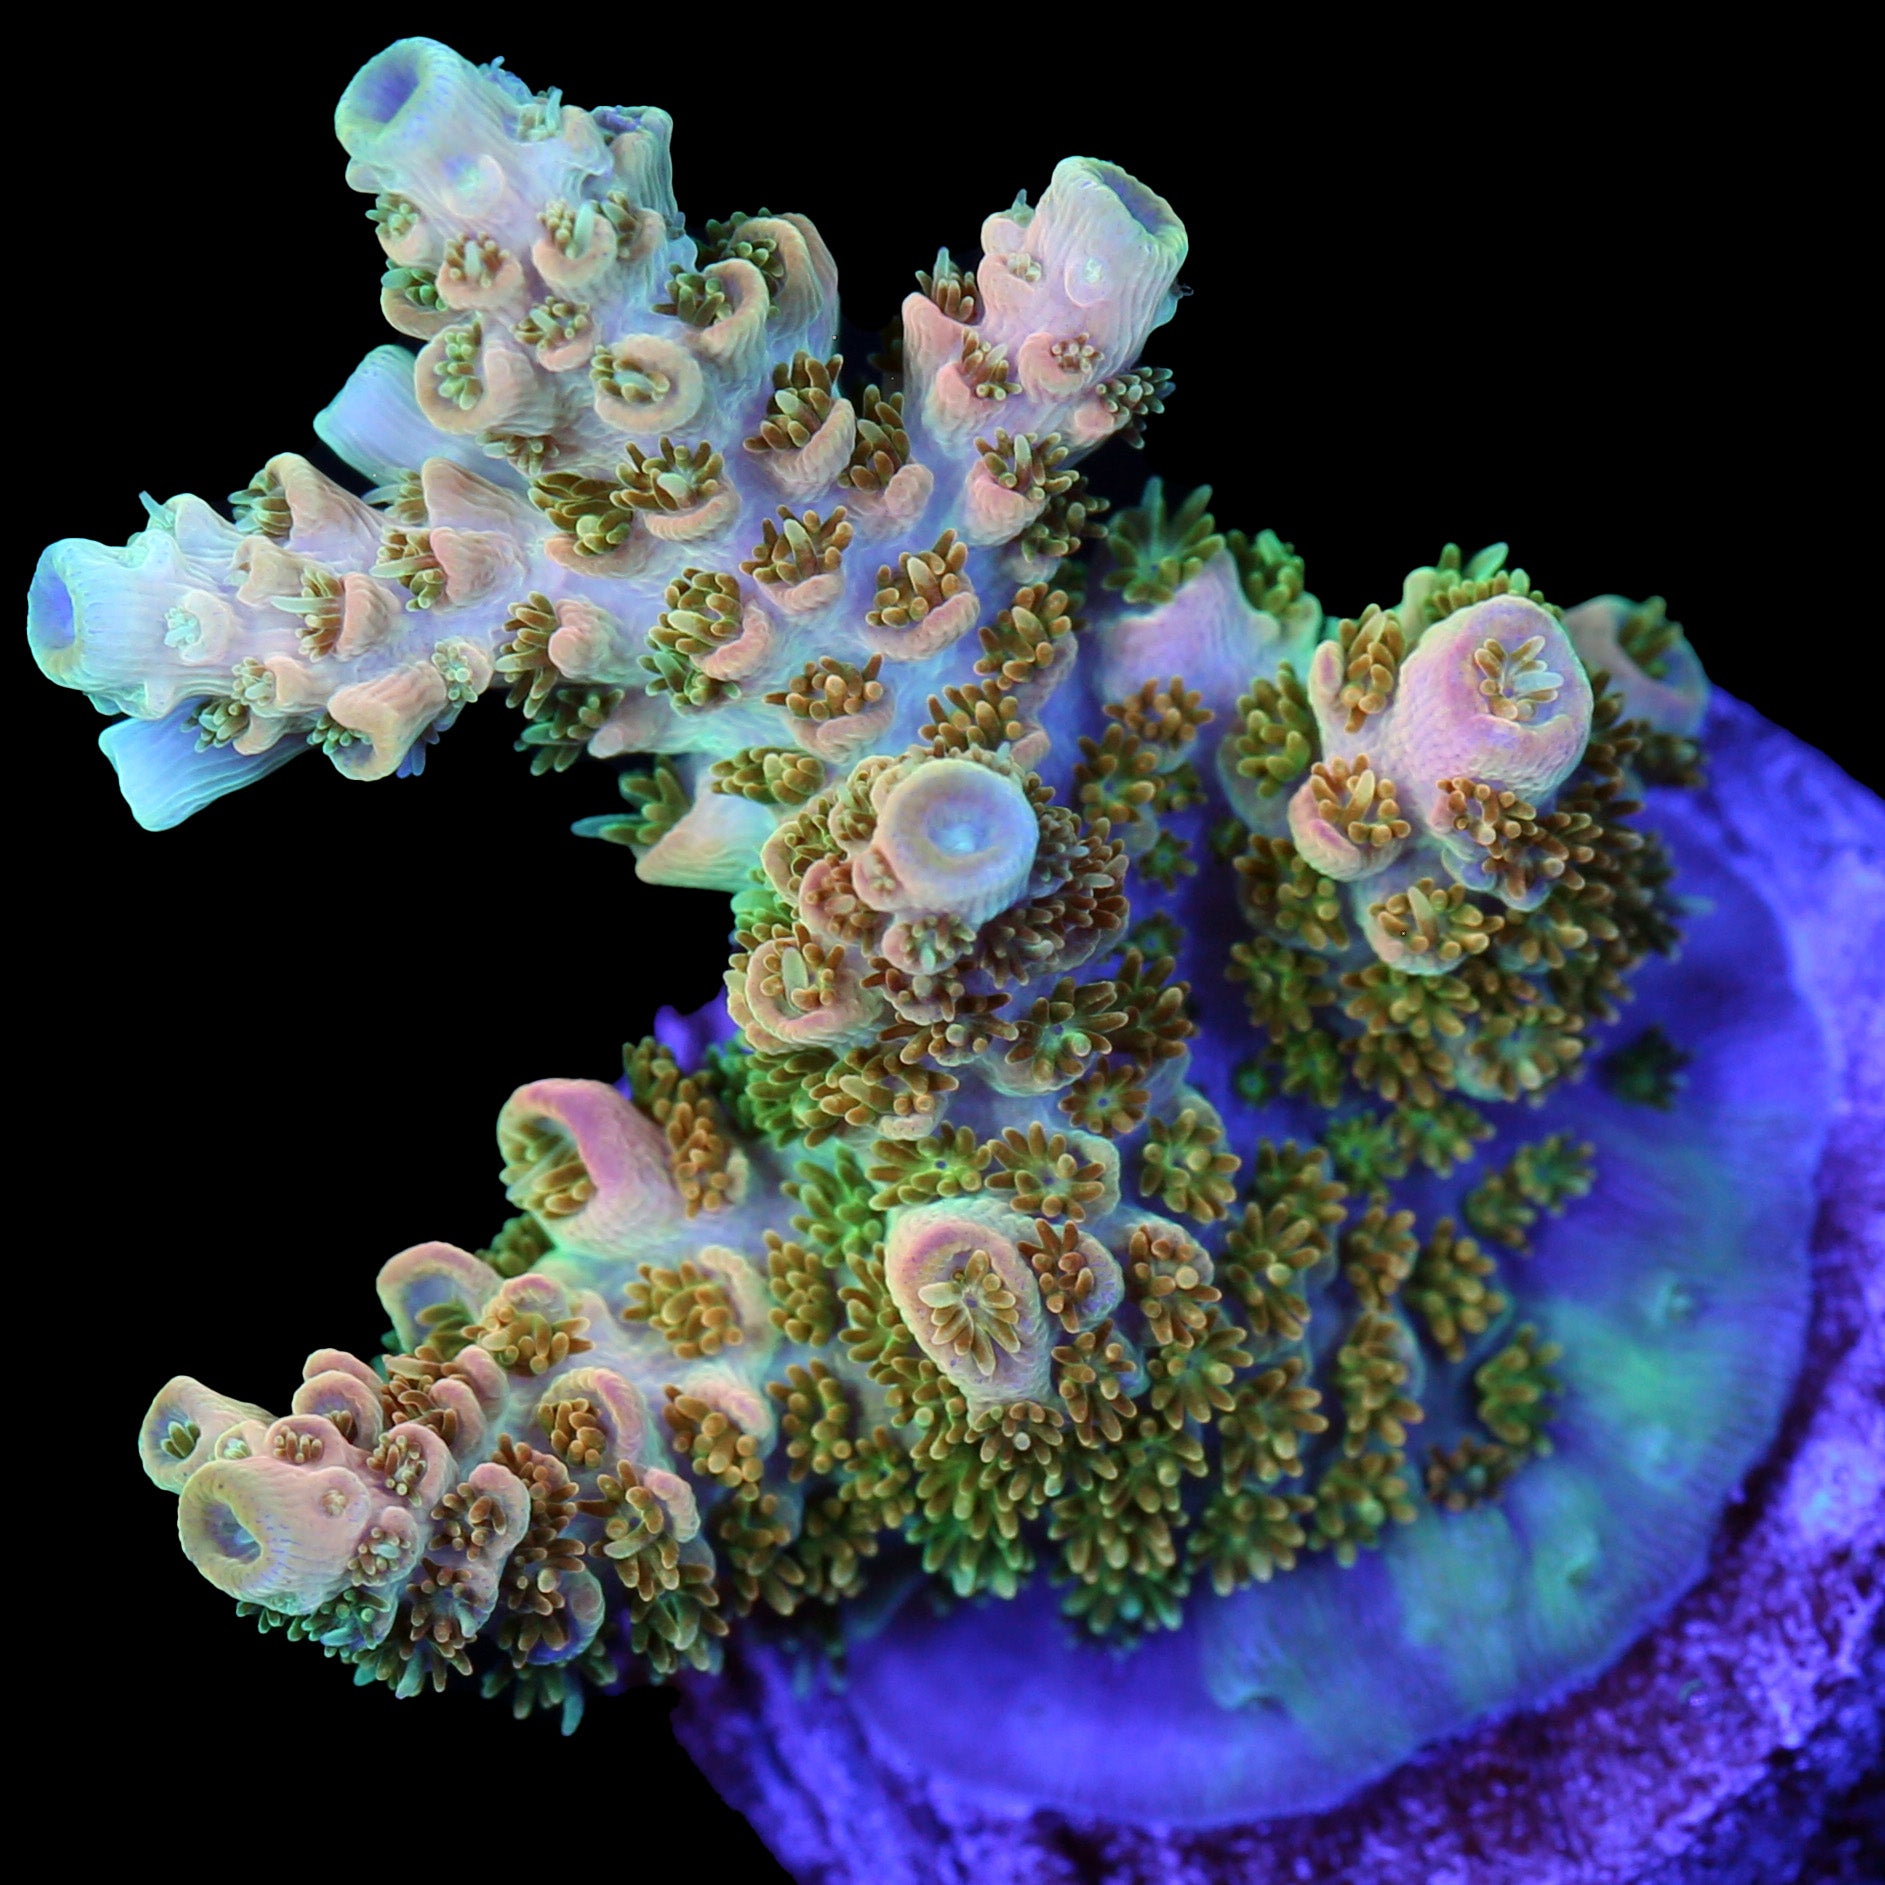 TSA Bill Murray Acropora Coral